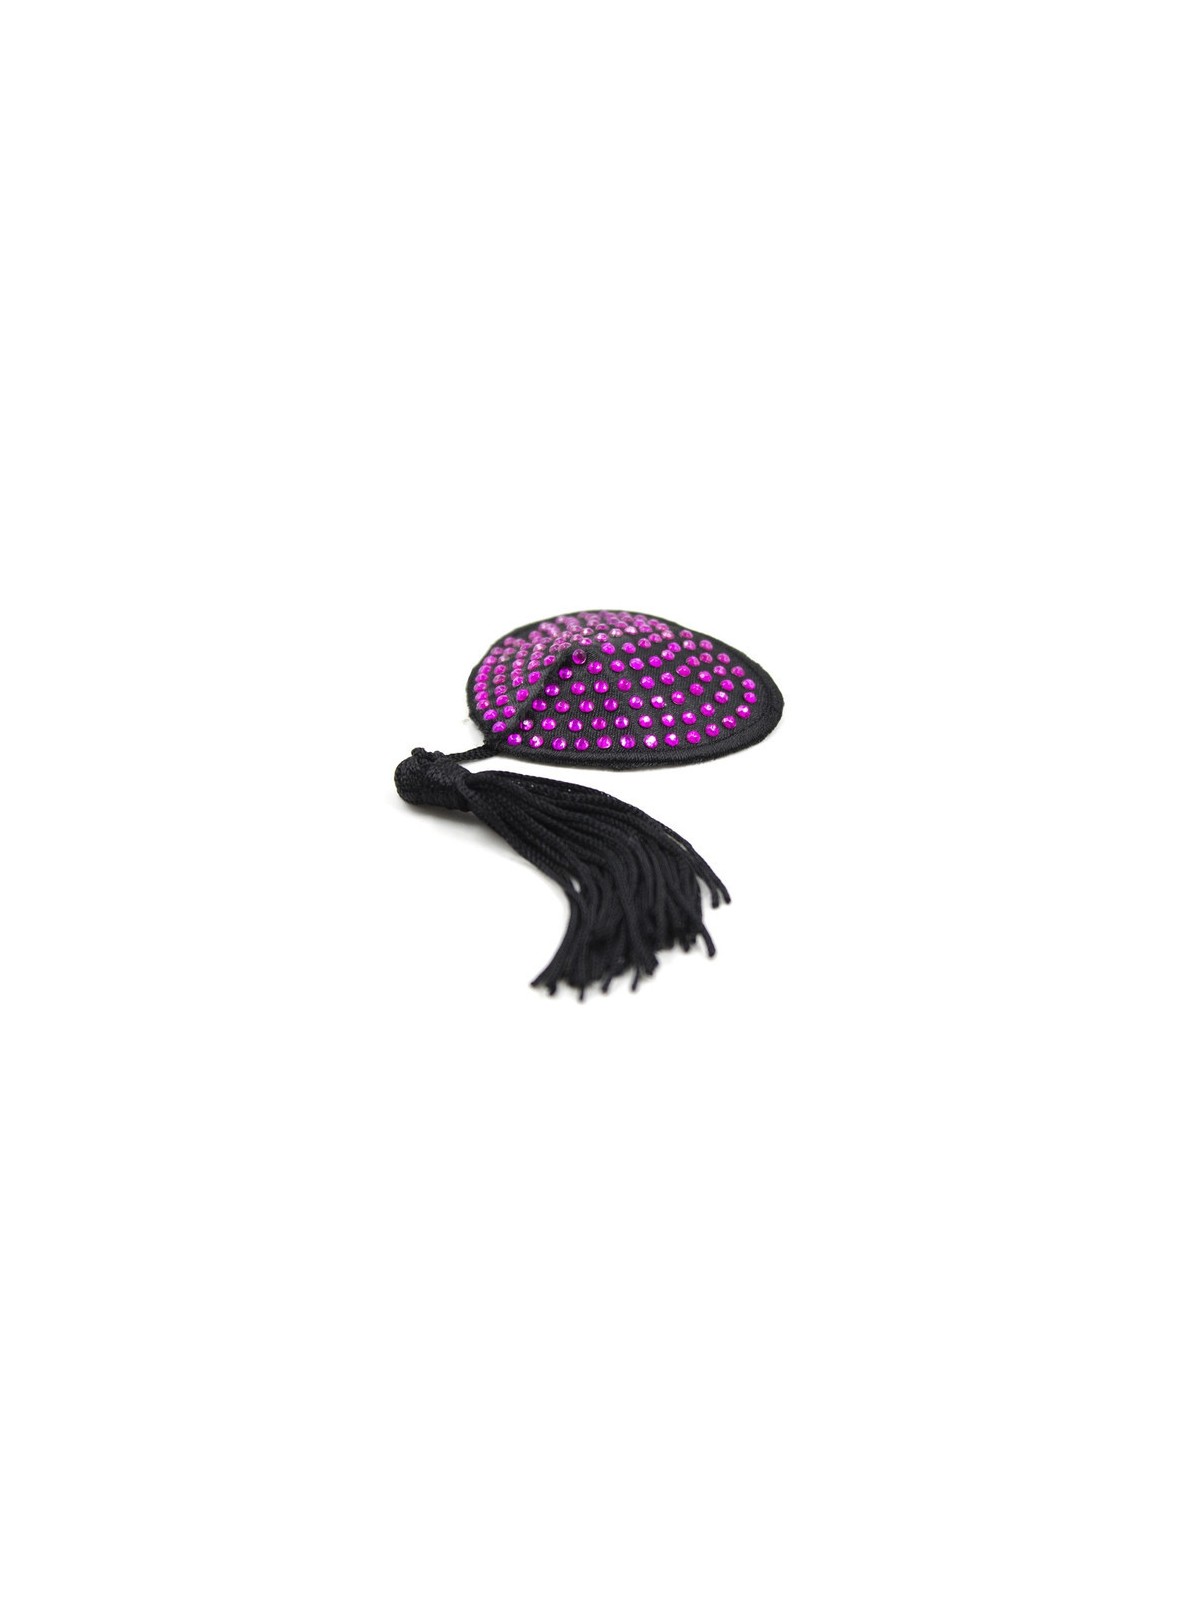 imports Cache-Tétons Coeur Noir-Violet x2 Voilà 2 cache-tétons noirs avec les petites perles brillantes à la surface. La couleur